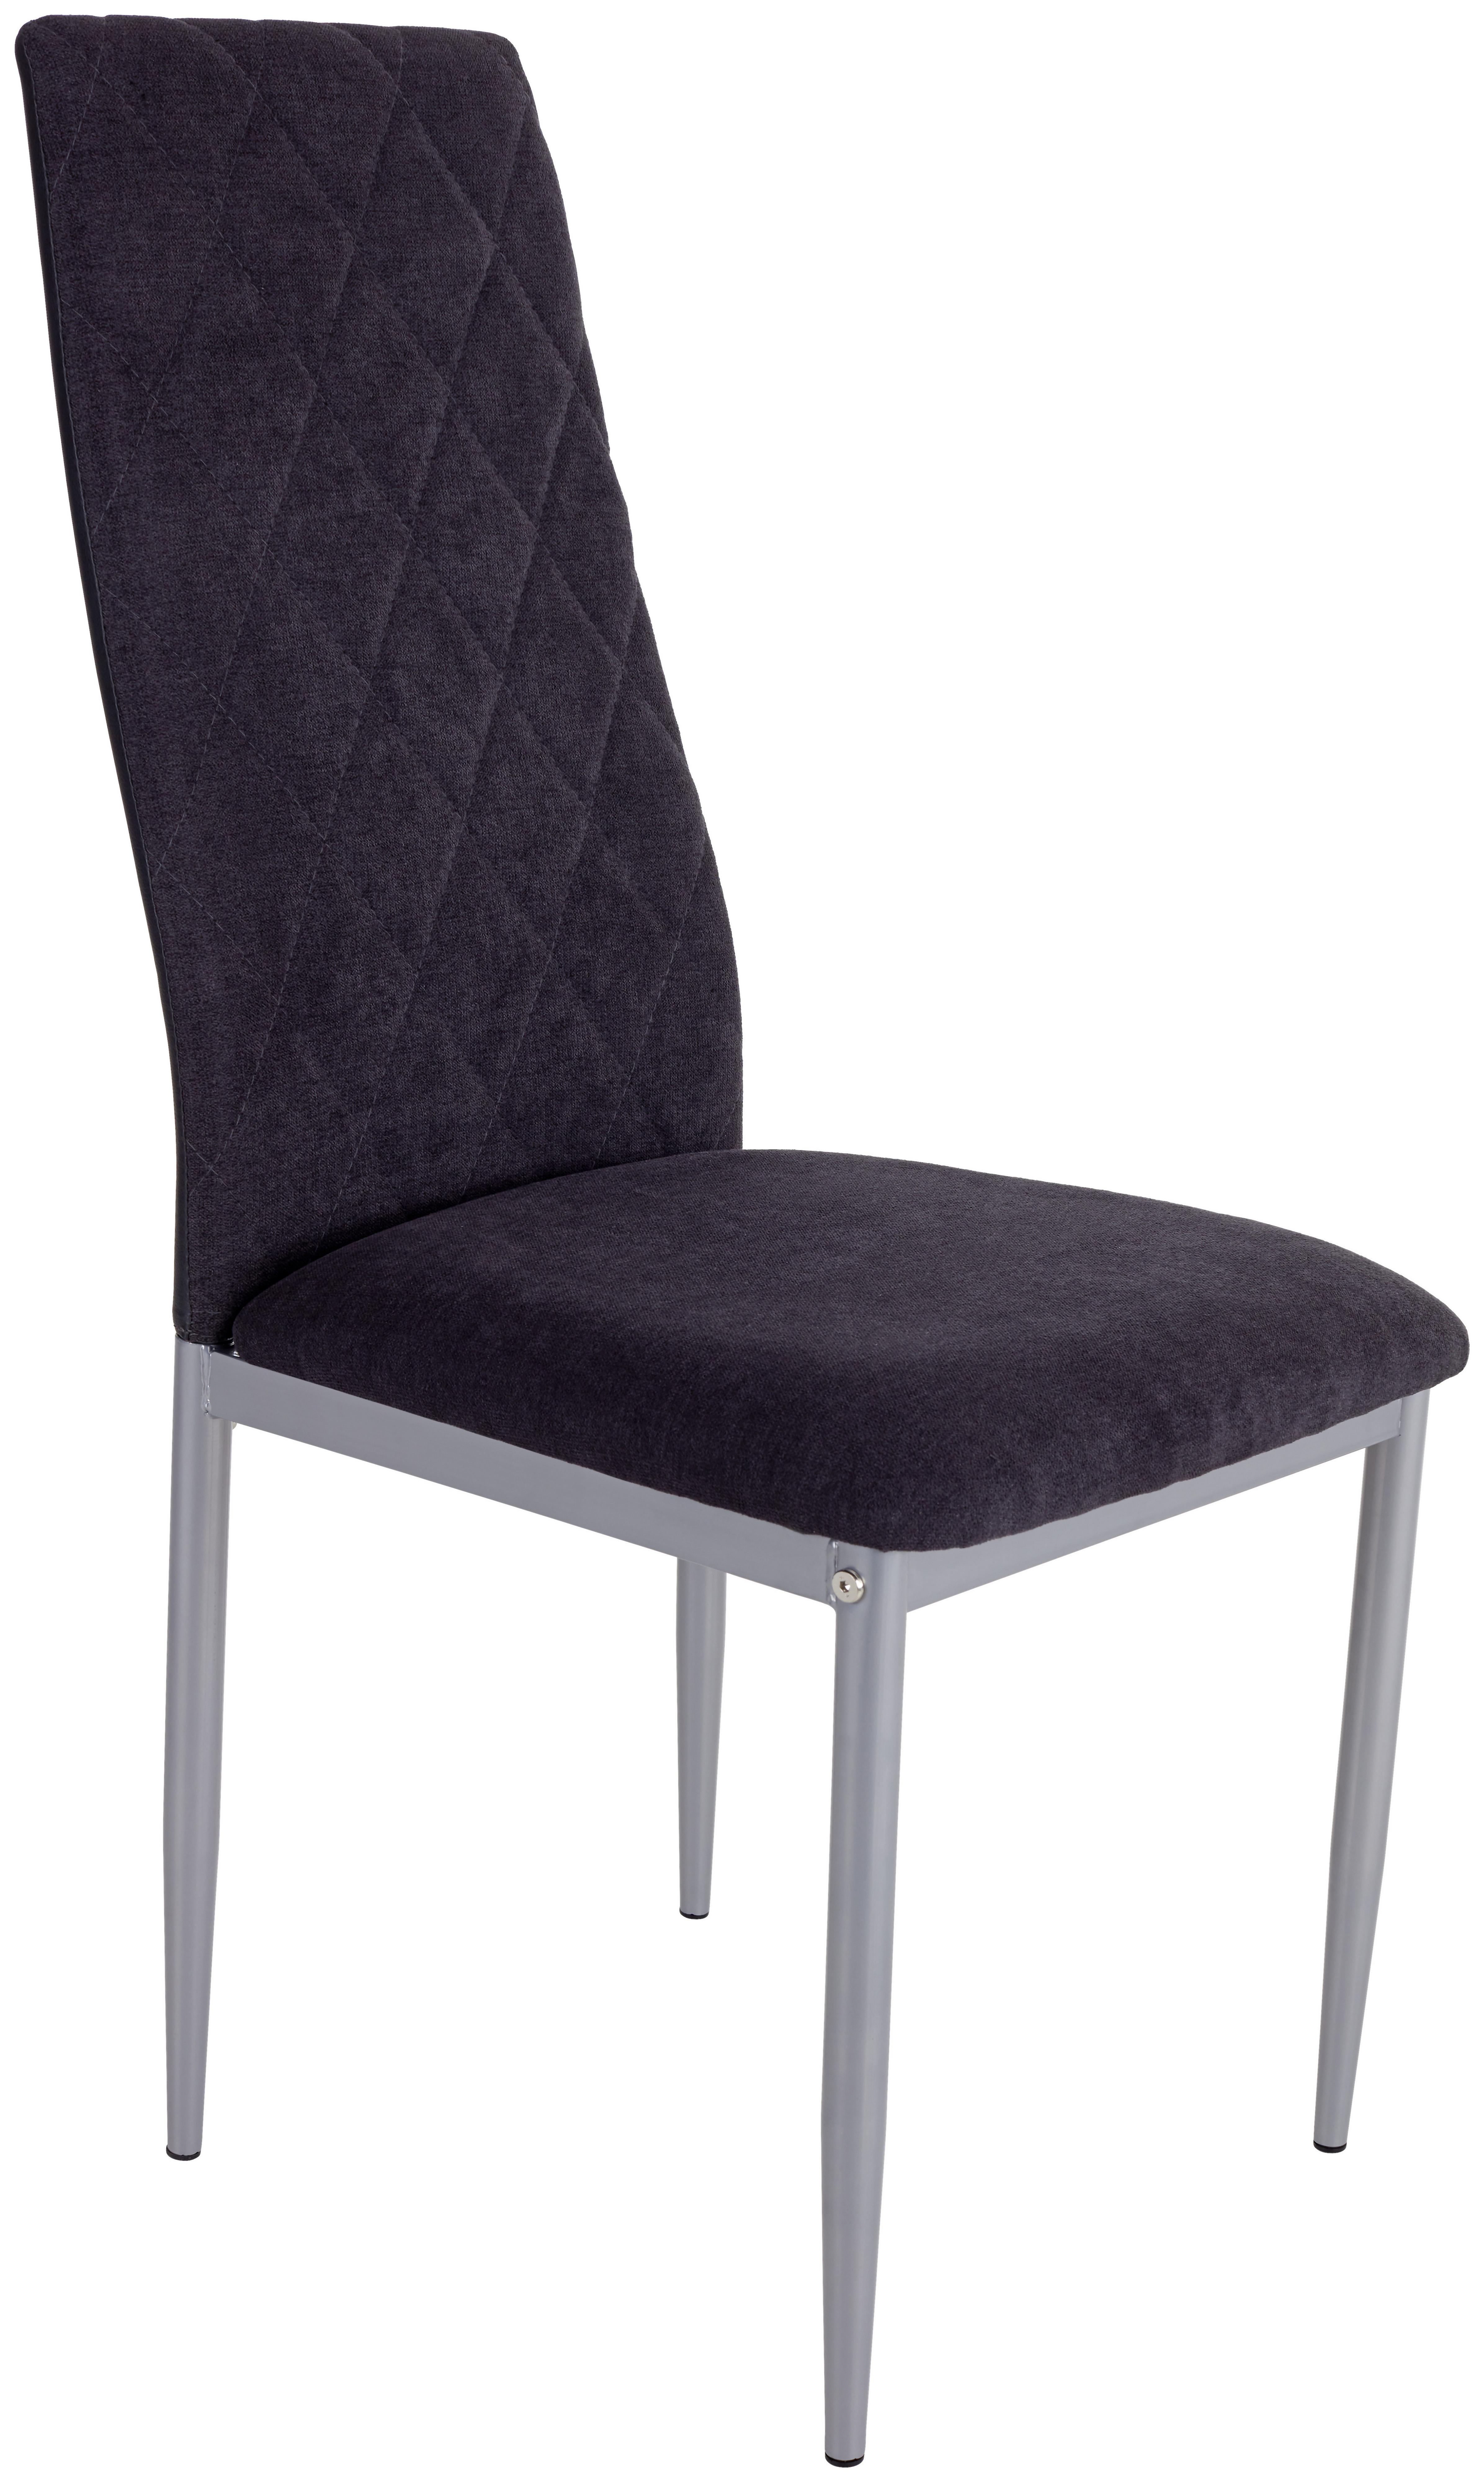 Židle Se 4 Nohami Franka - černá/barvy stříbra, Konvenční, kov/textil (42/97/53cm)